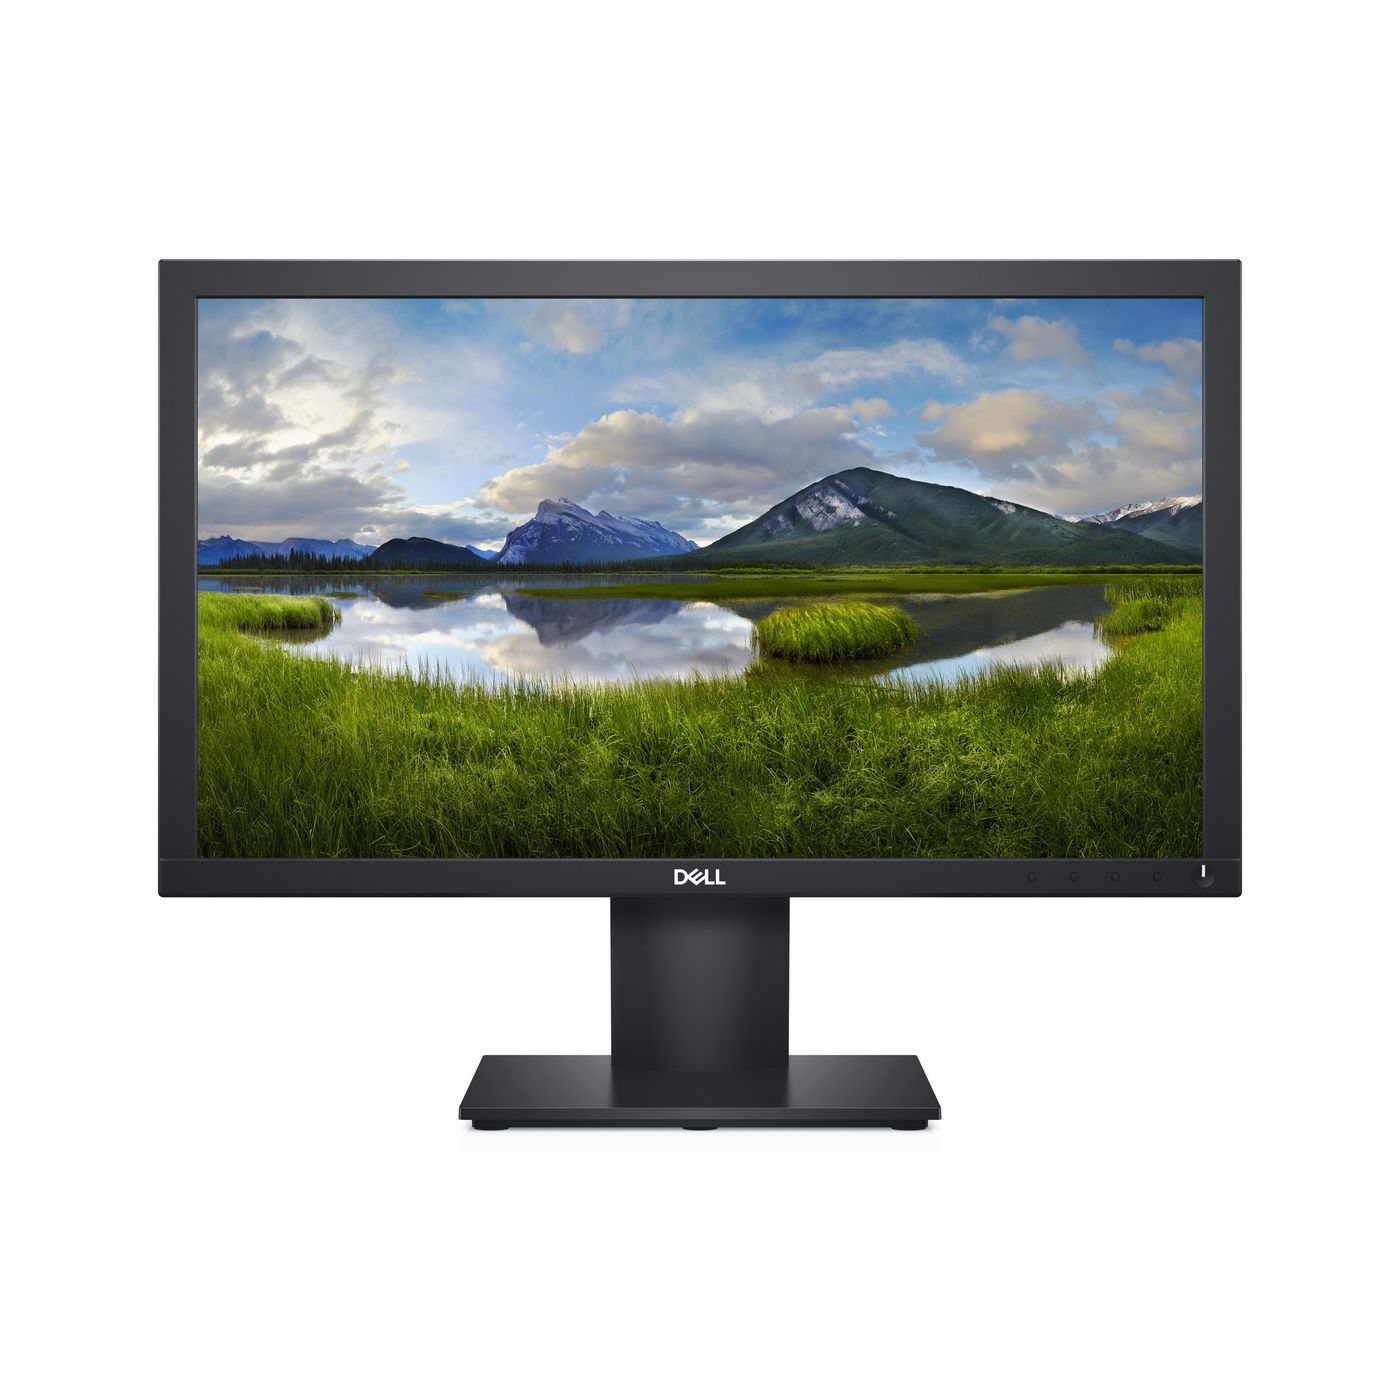 Monitor - 20in - E2020h - 1600x900 Pixels - Black